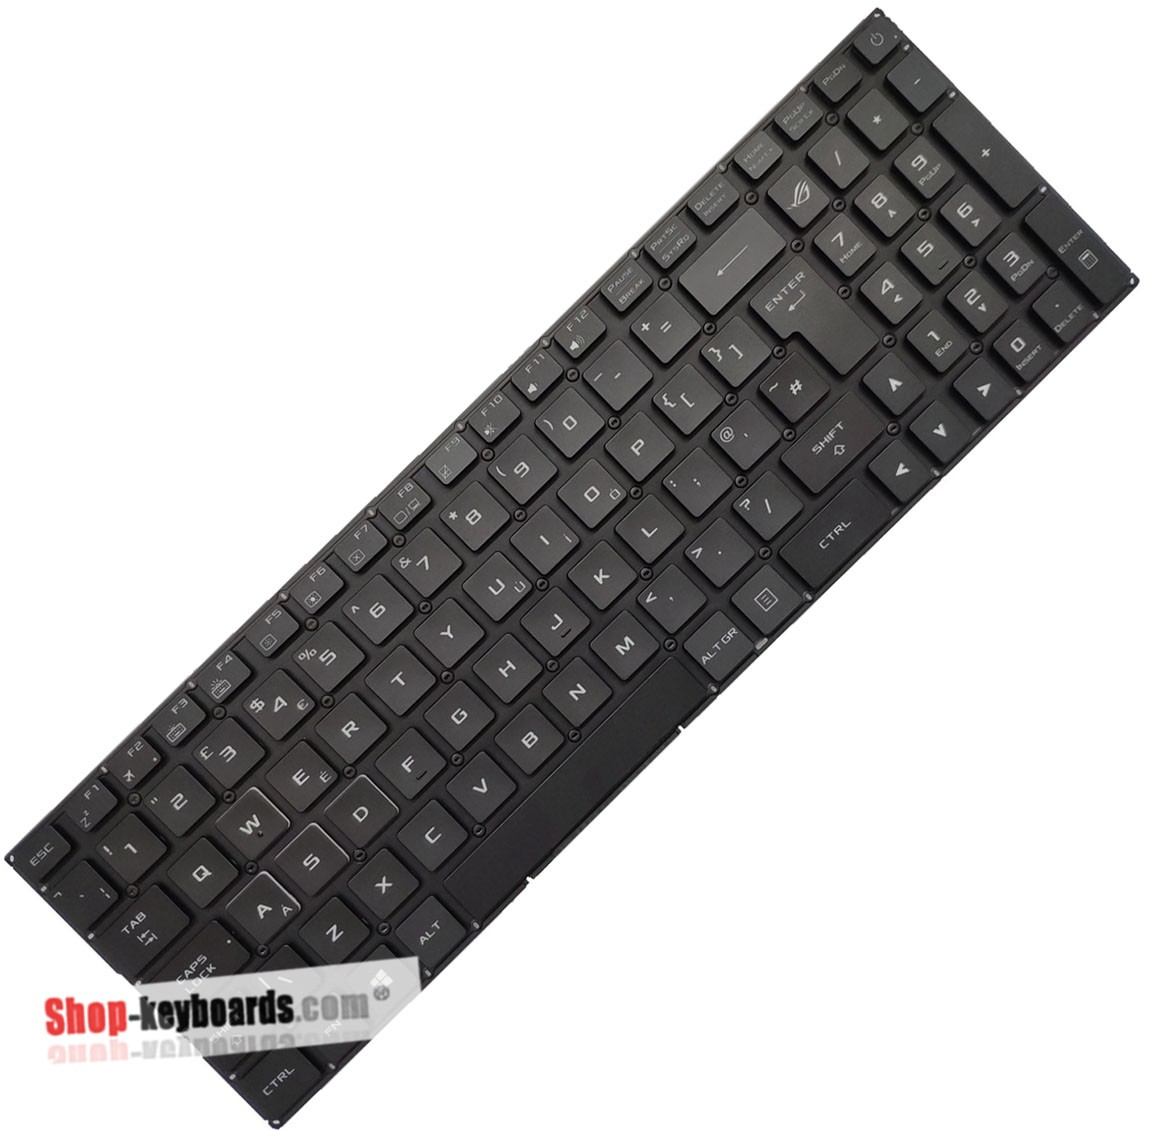 Asus 0KNB0-662PUK00 Keyboard replacement